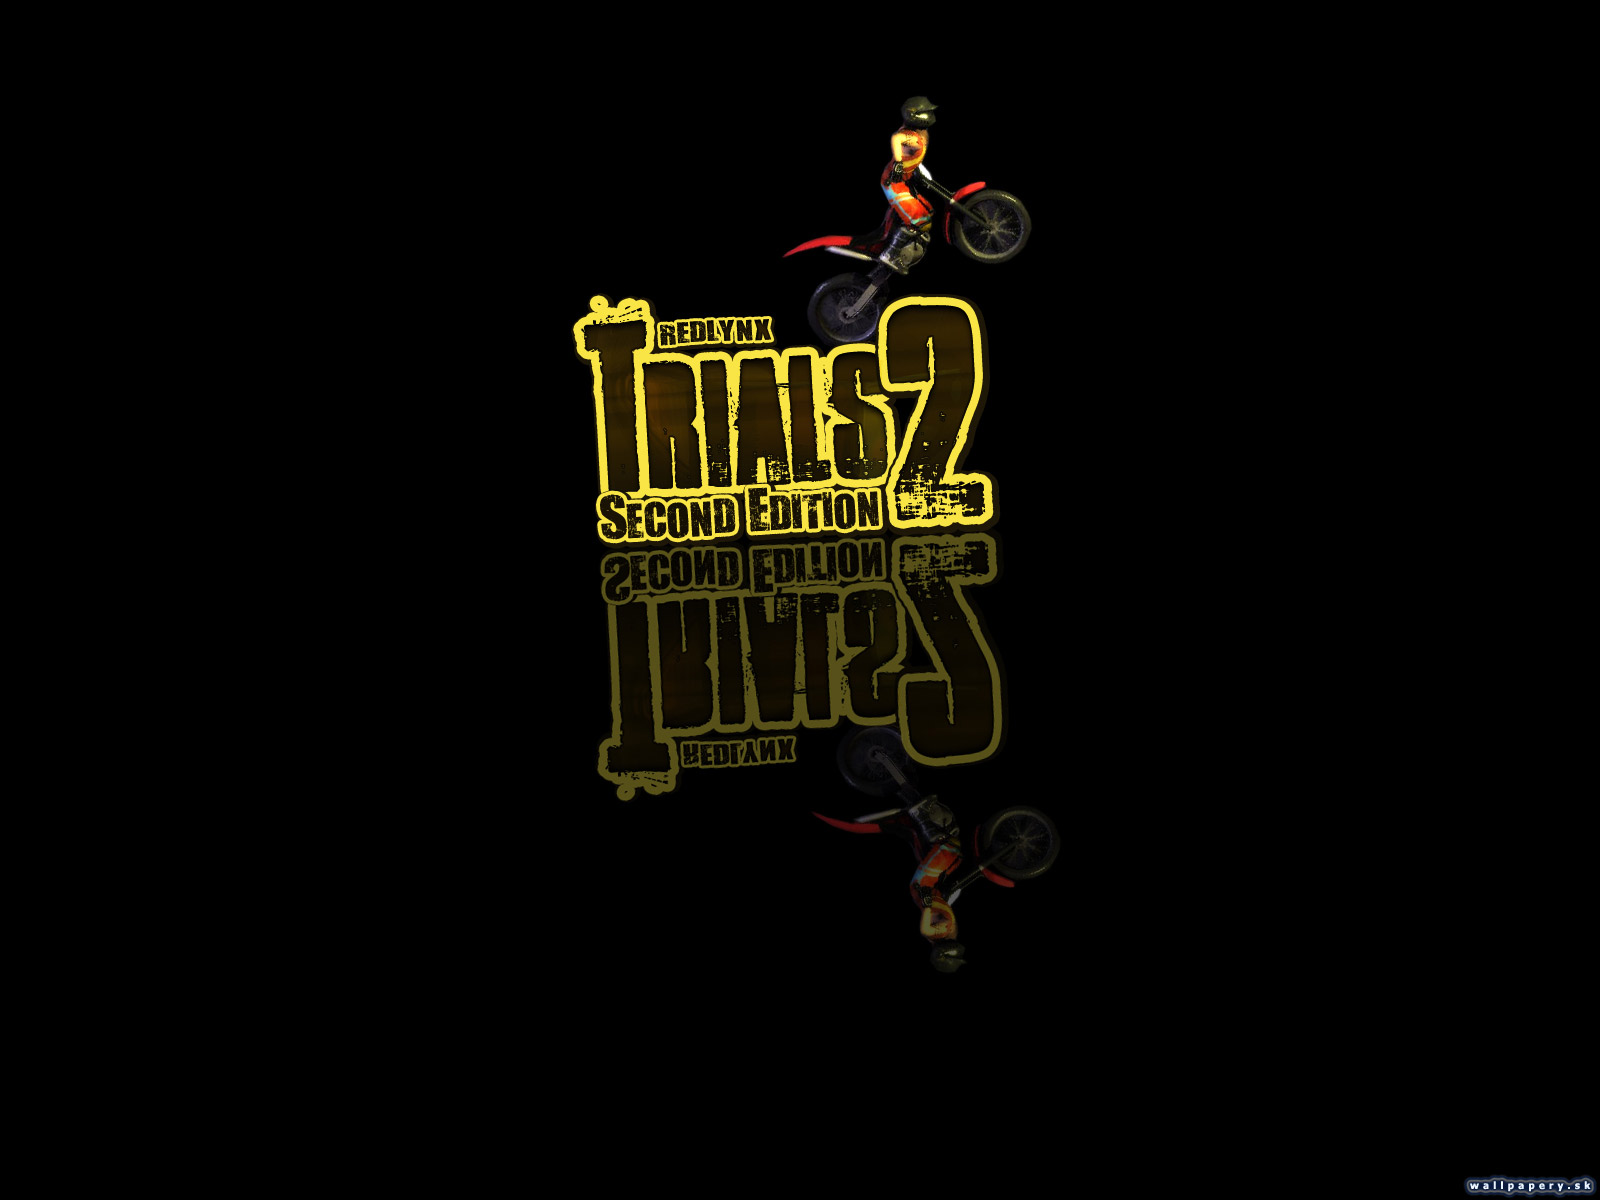 Trials 2: Second Edition - wallpaper 7